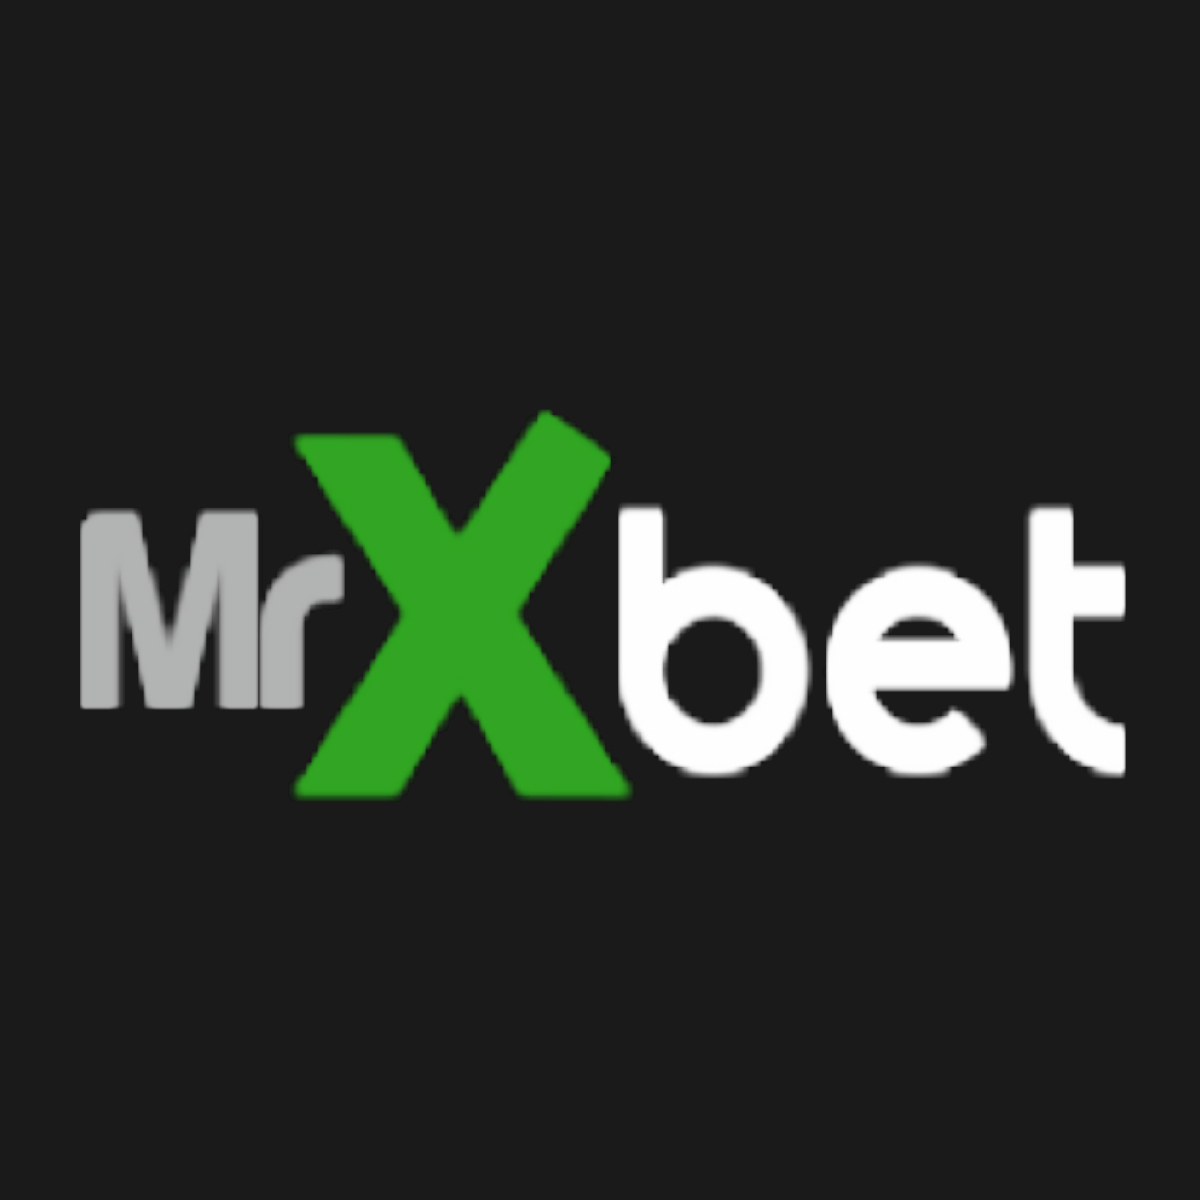 Mrxbet Logo